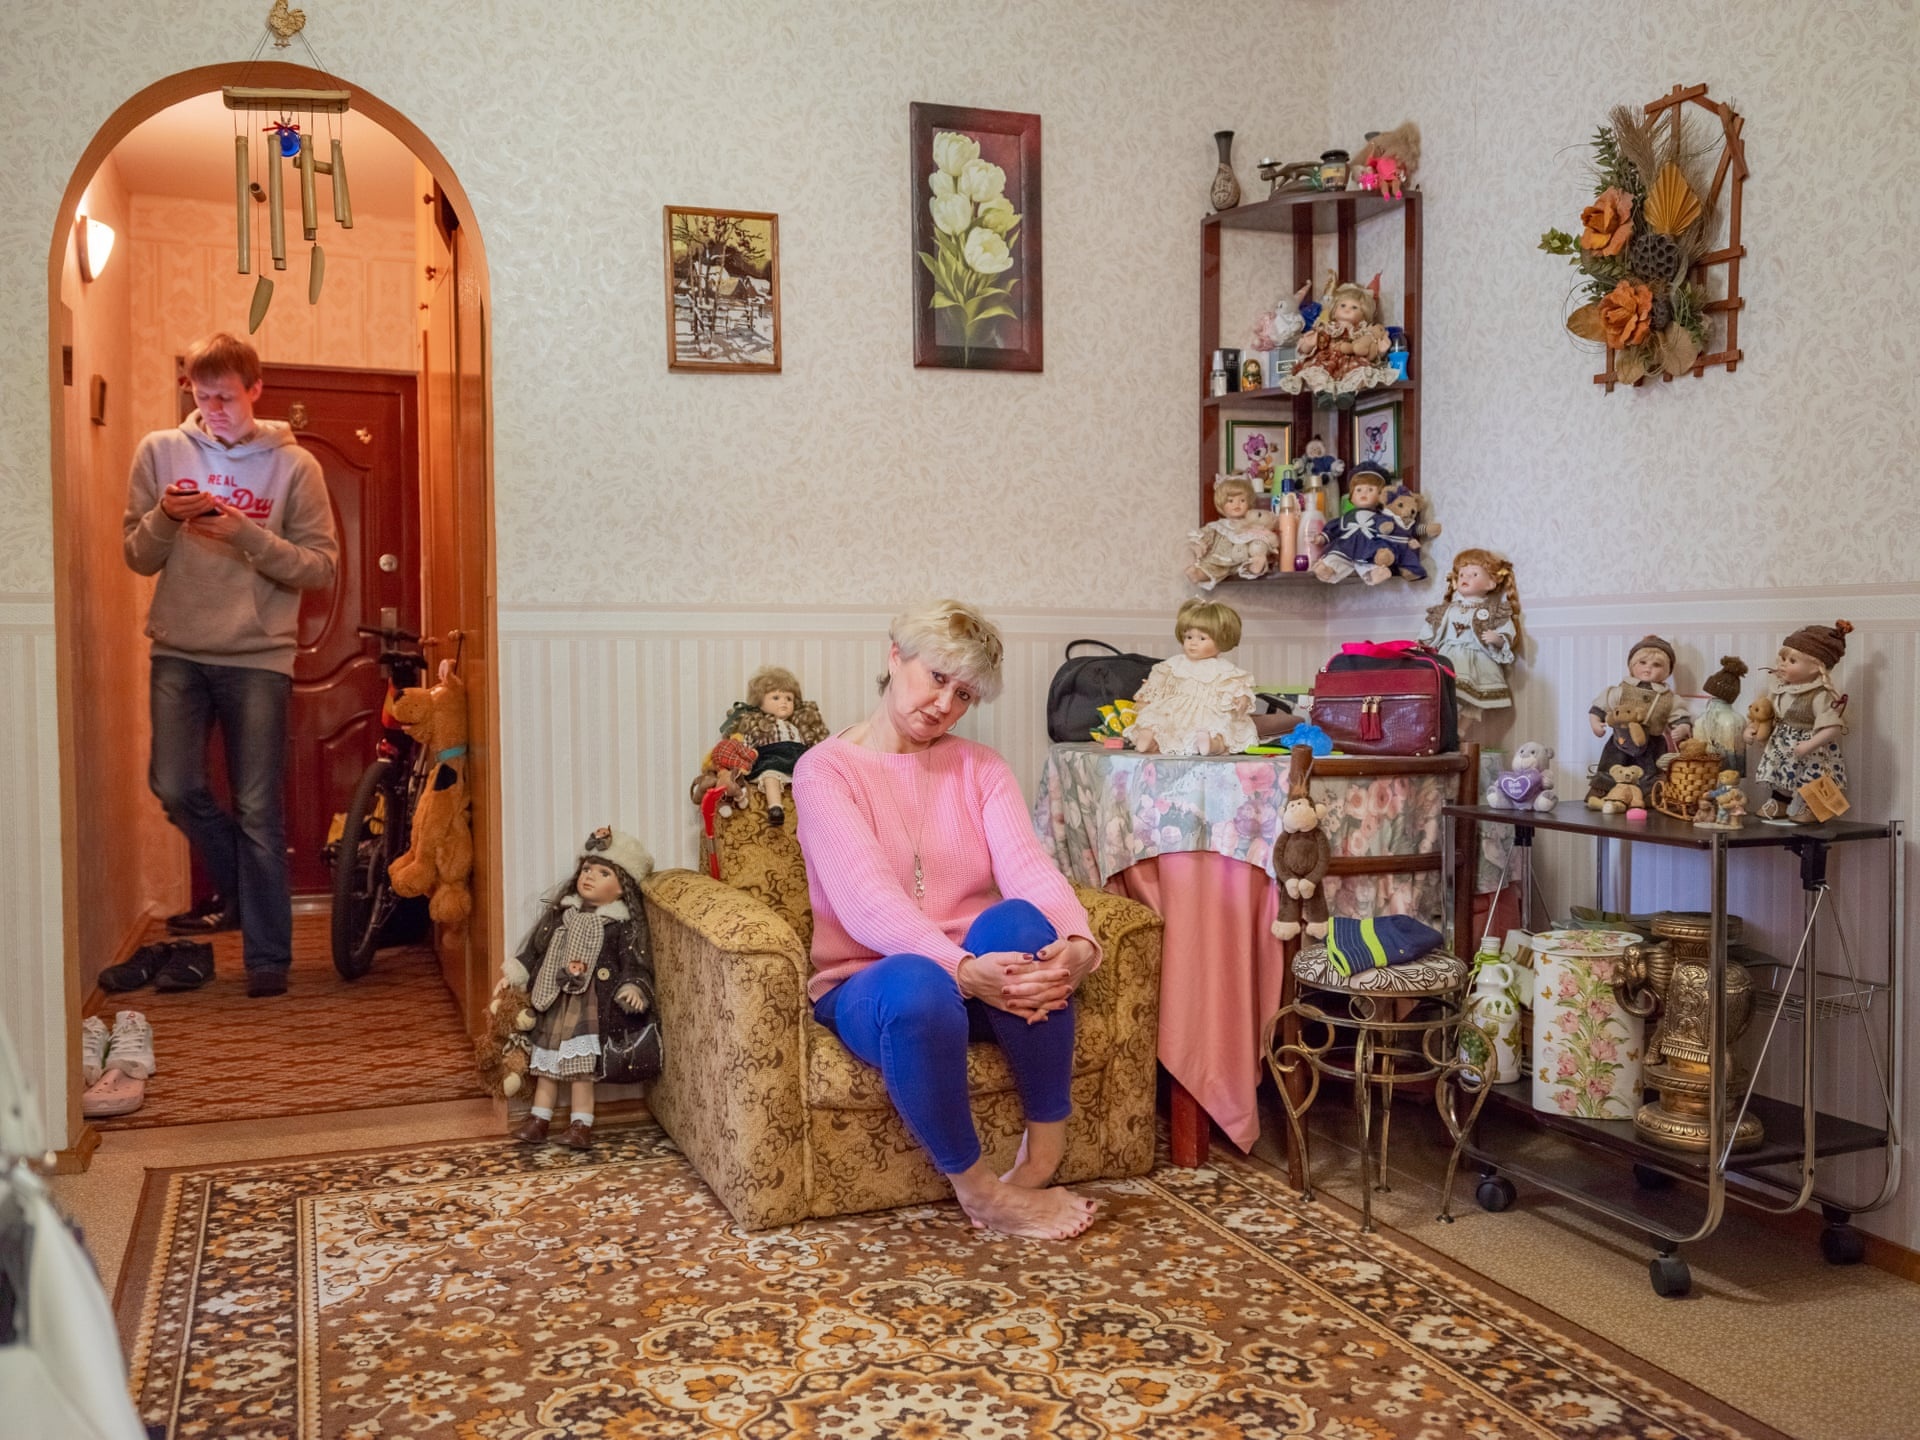 Світлана Захарченко була на четвертому місяці вагітності, коли у Прип’яті сталась катастрофа. Її син Джей народився з серйозними ускладненнями печінки.